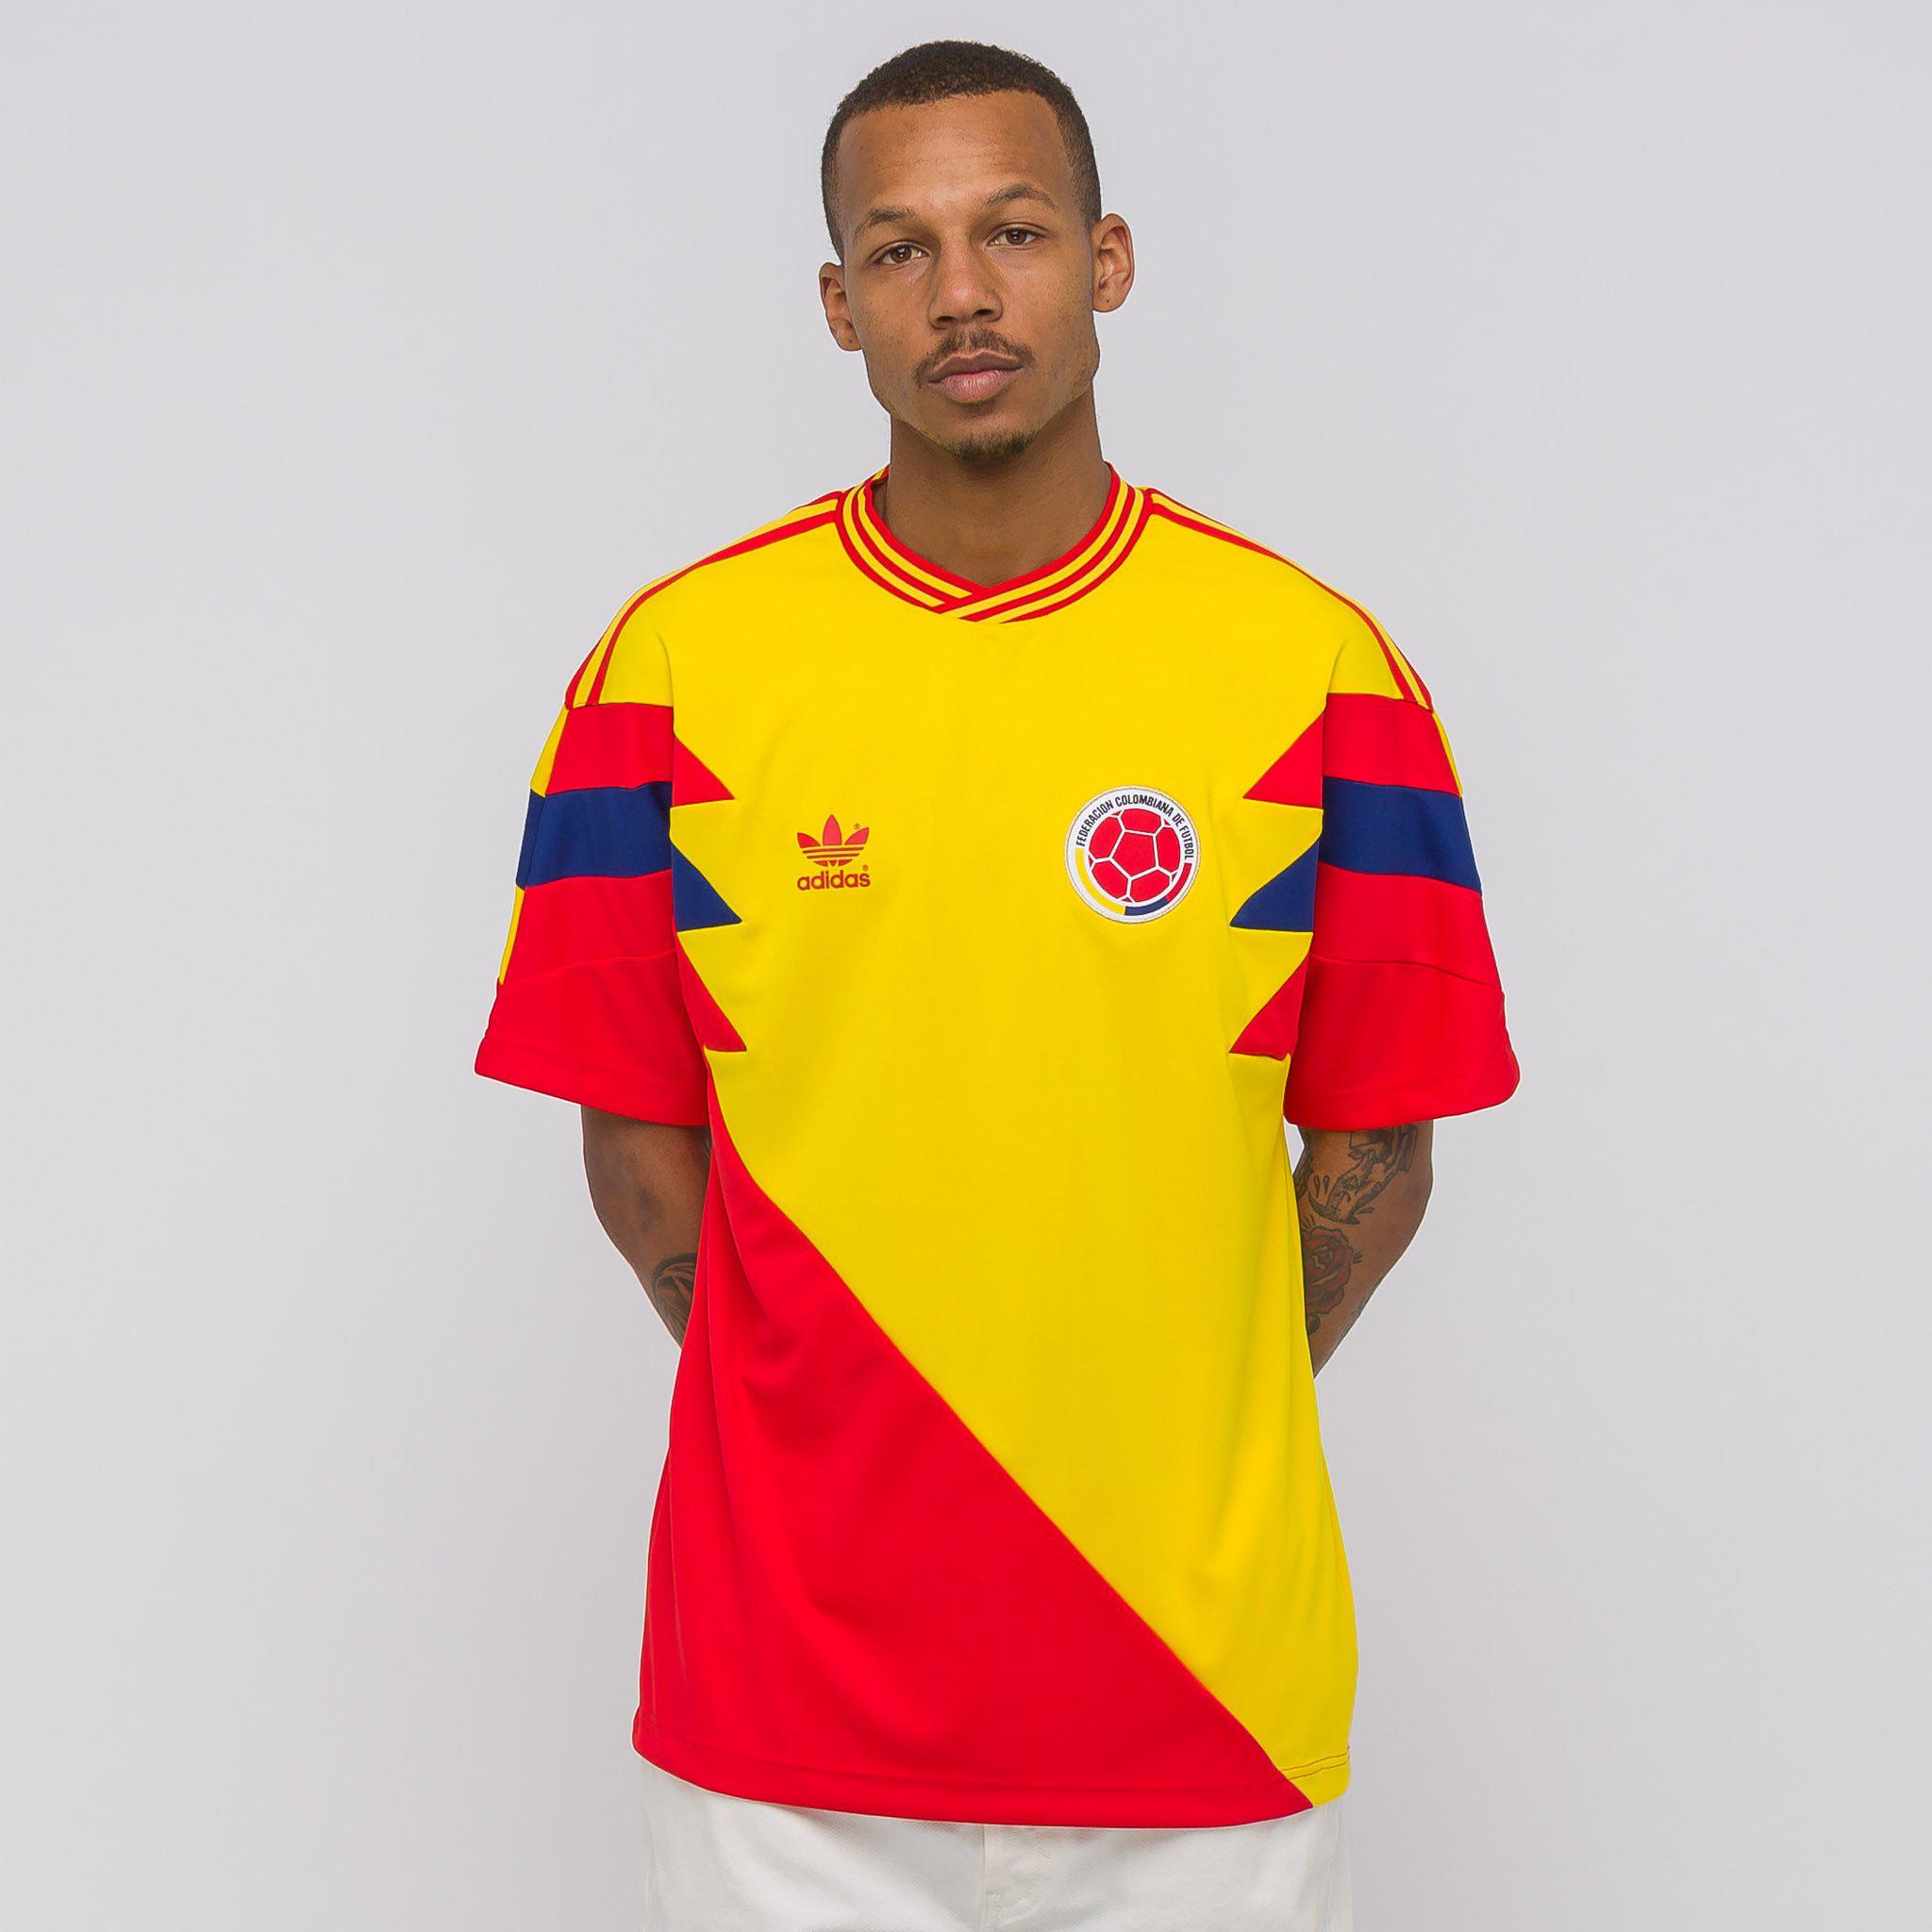 colombia women's soccer jersey